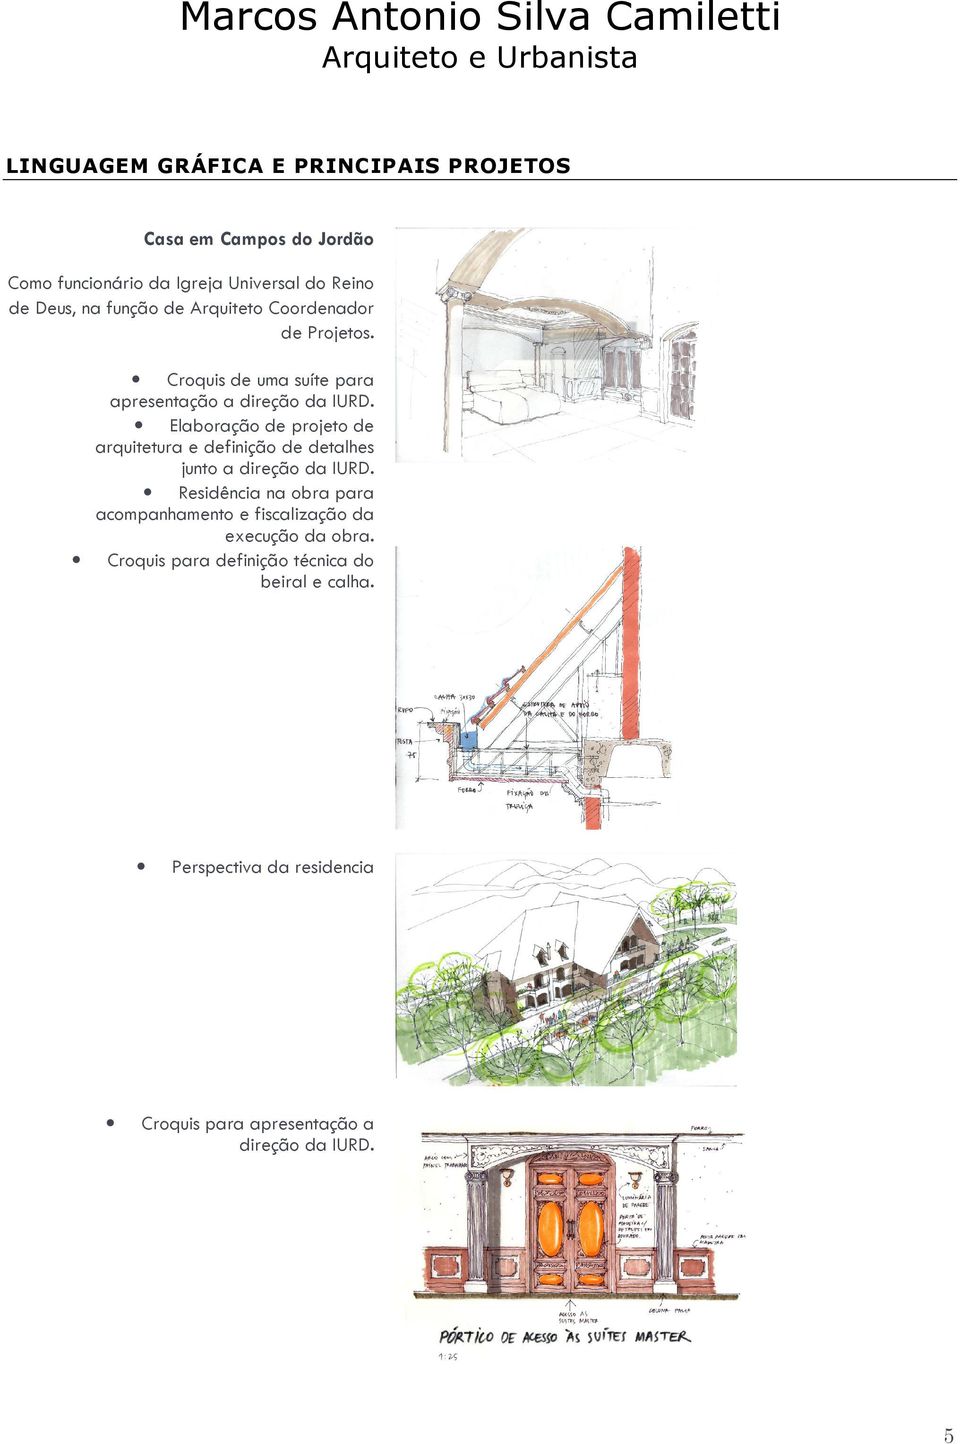 Elaboração de projeto de arquitetura e definição de detalhes junto a direção da IURD.